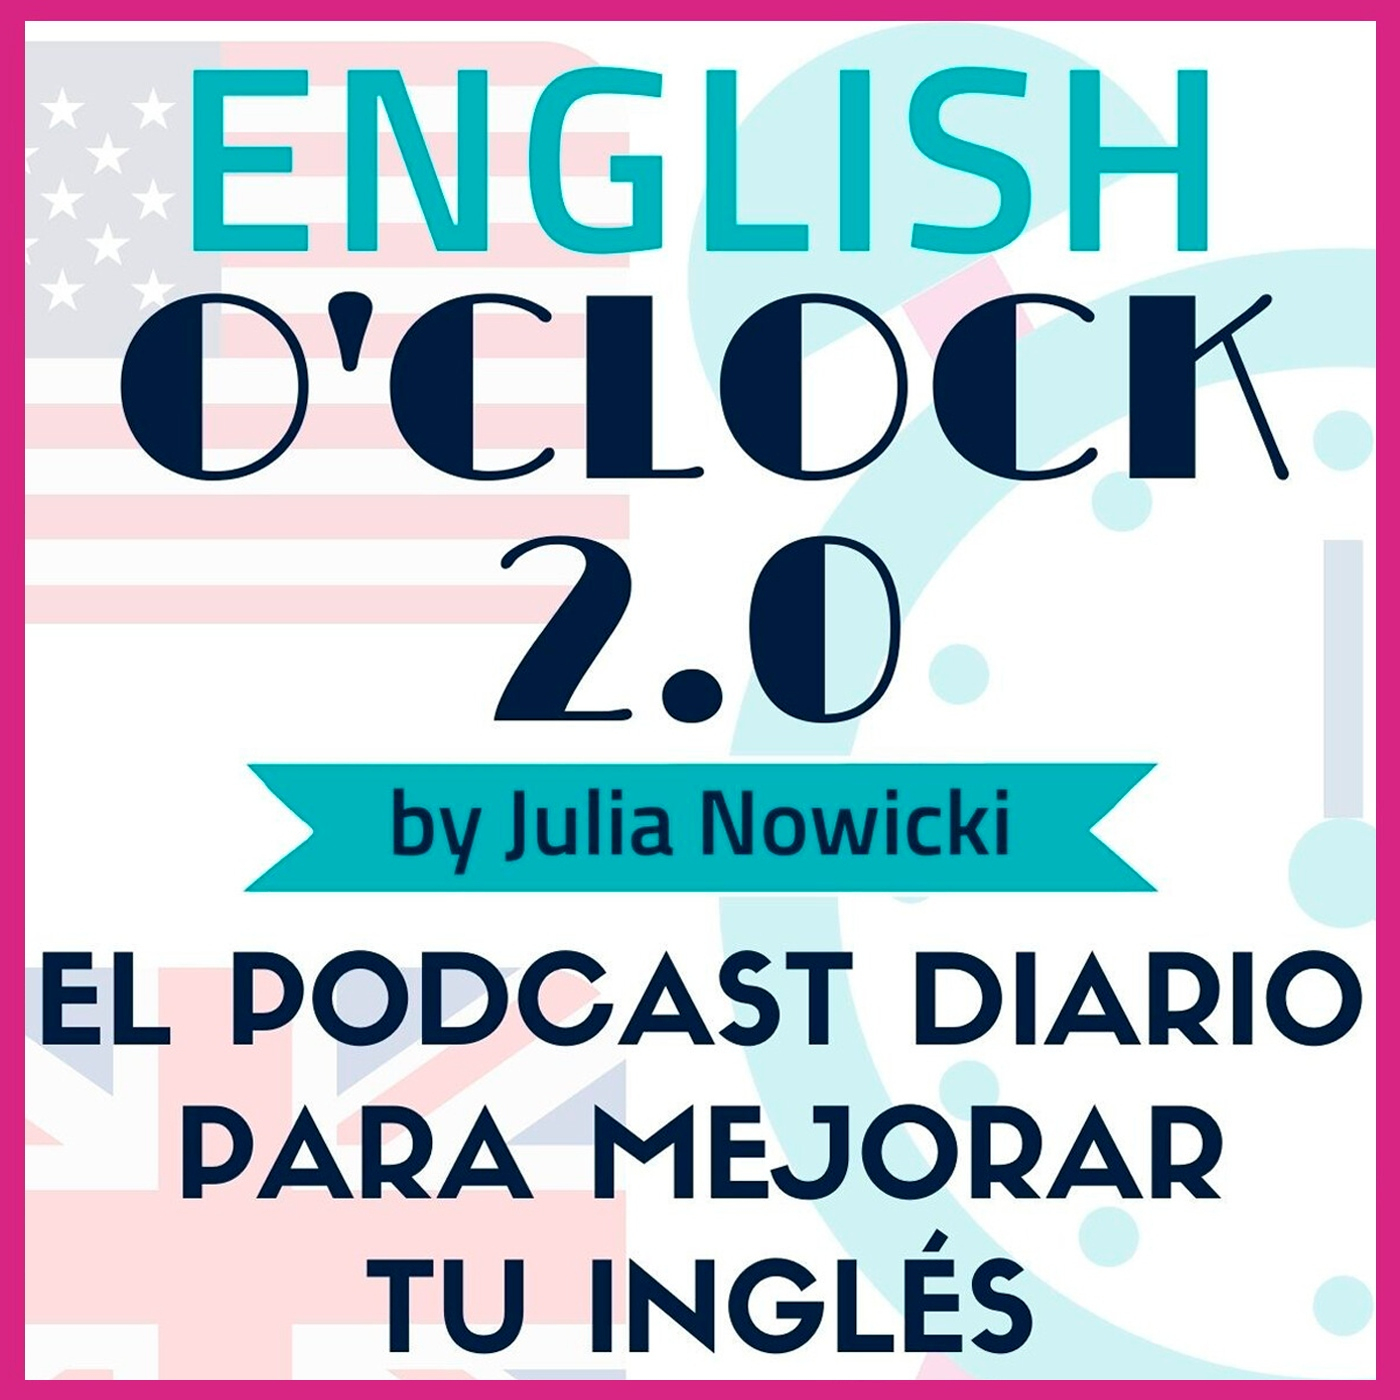 English oclock 2.0